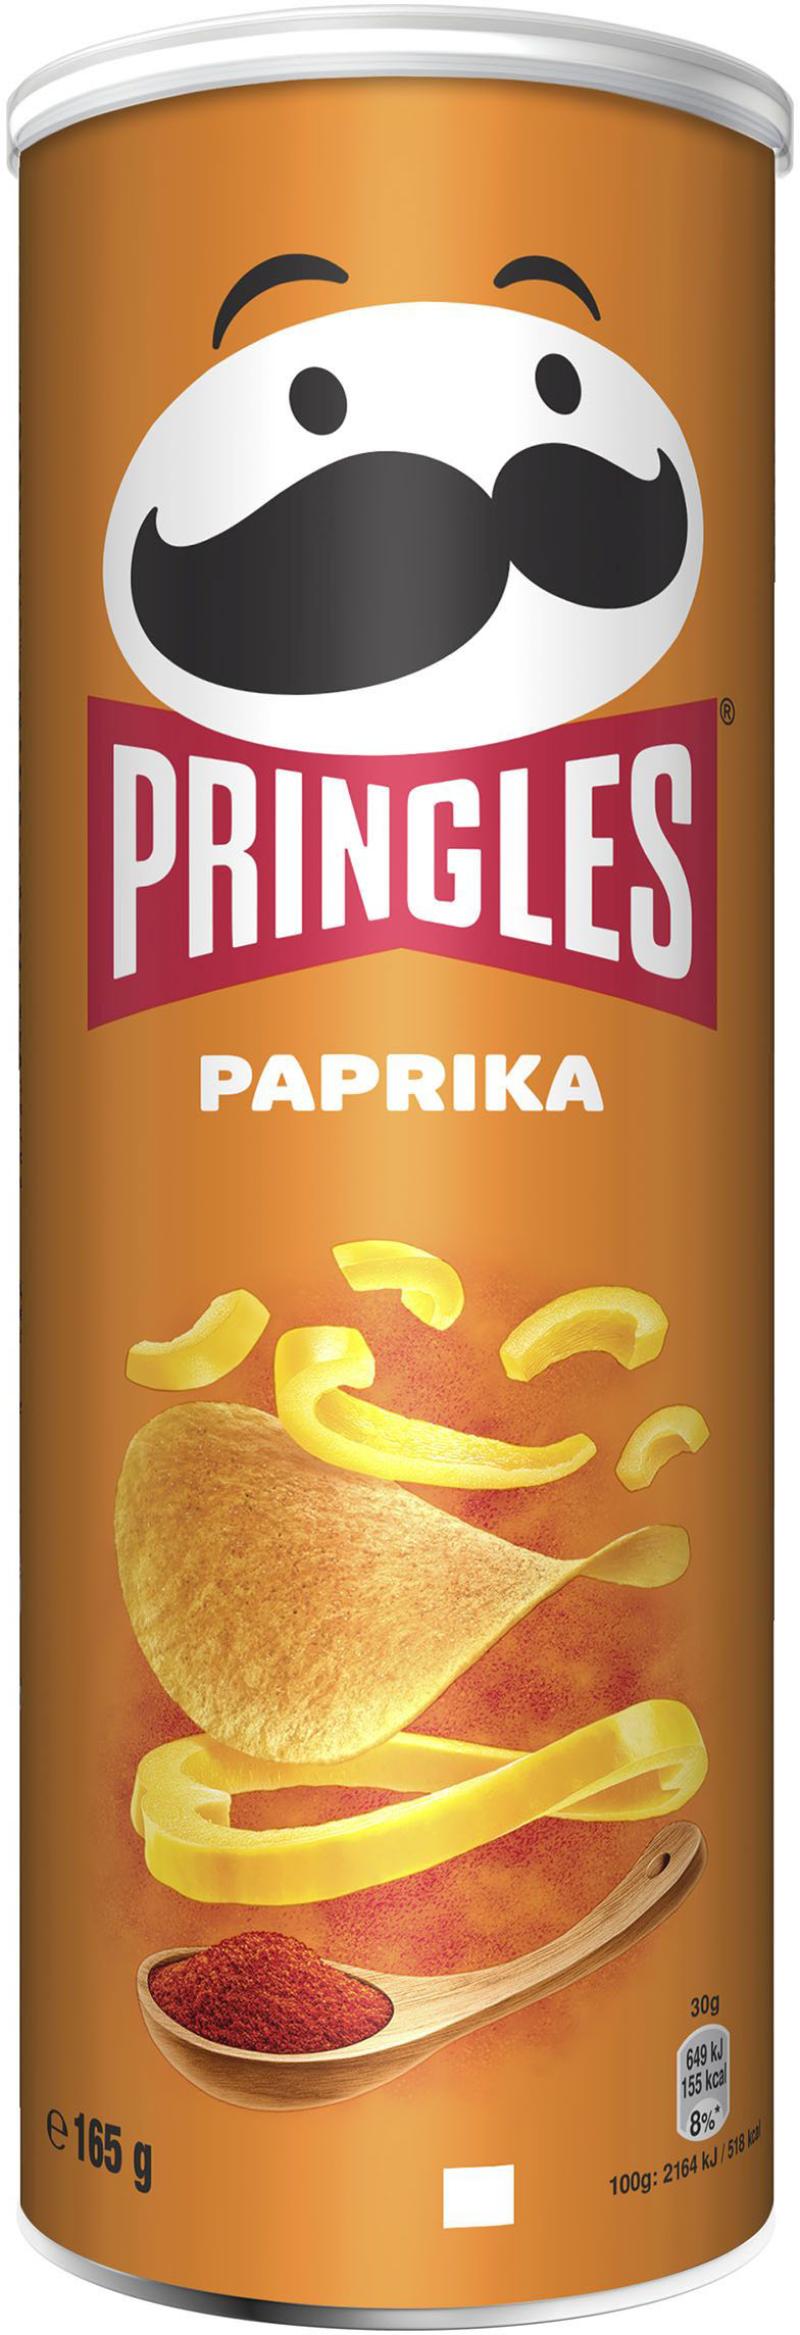 Pringles paprika 175gr